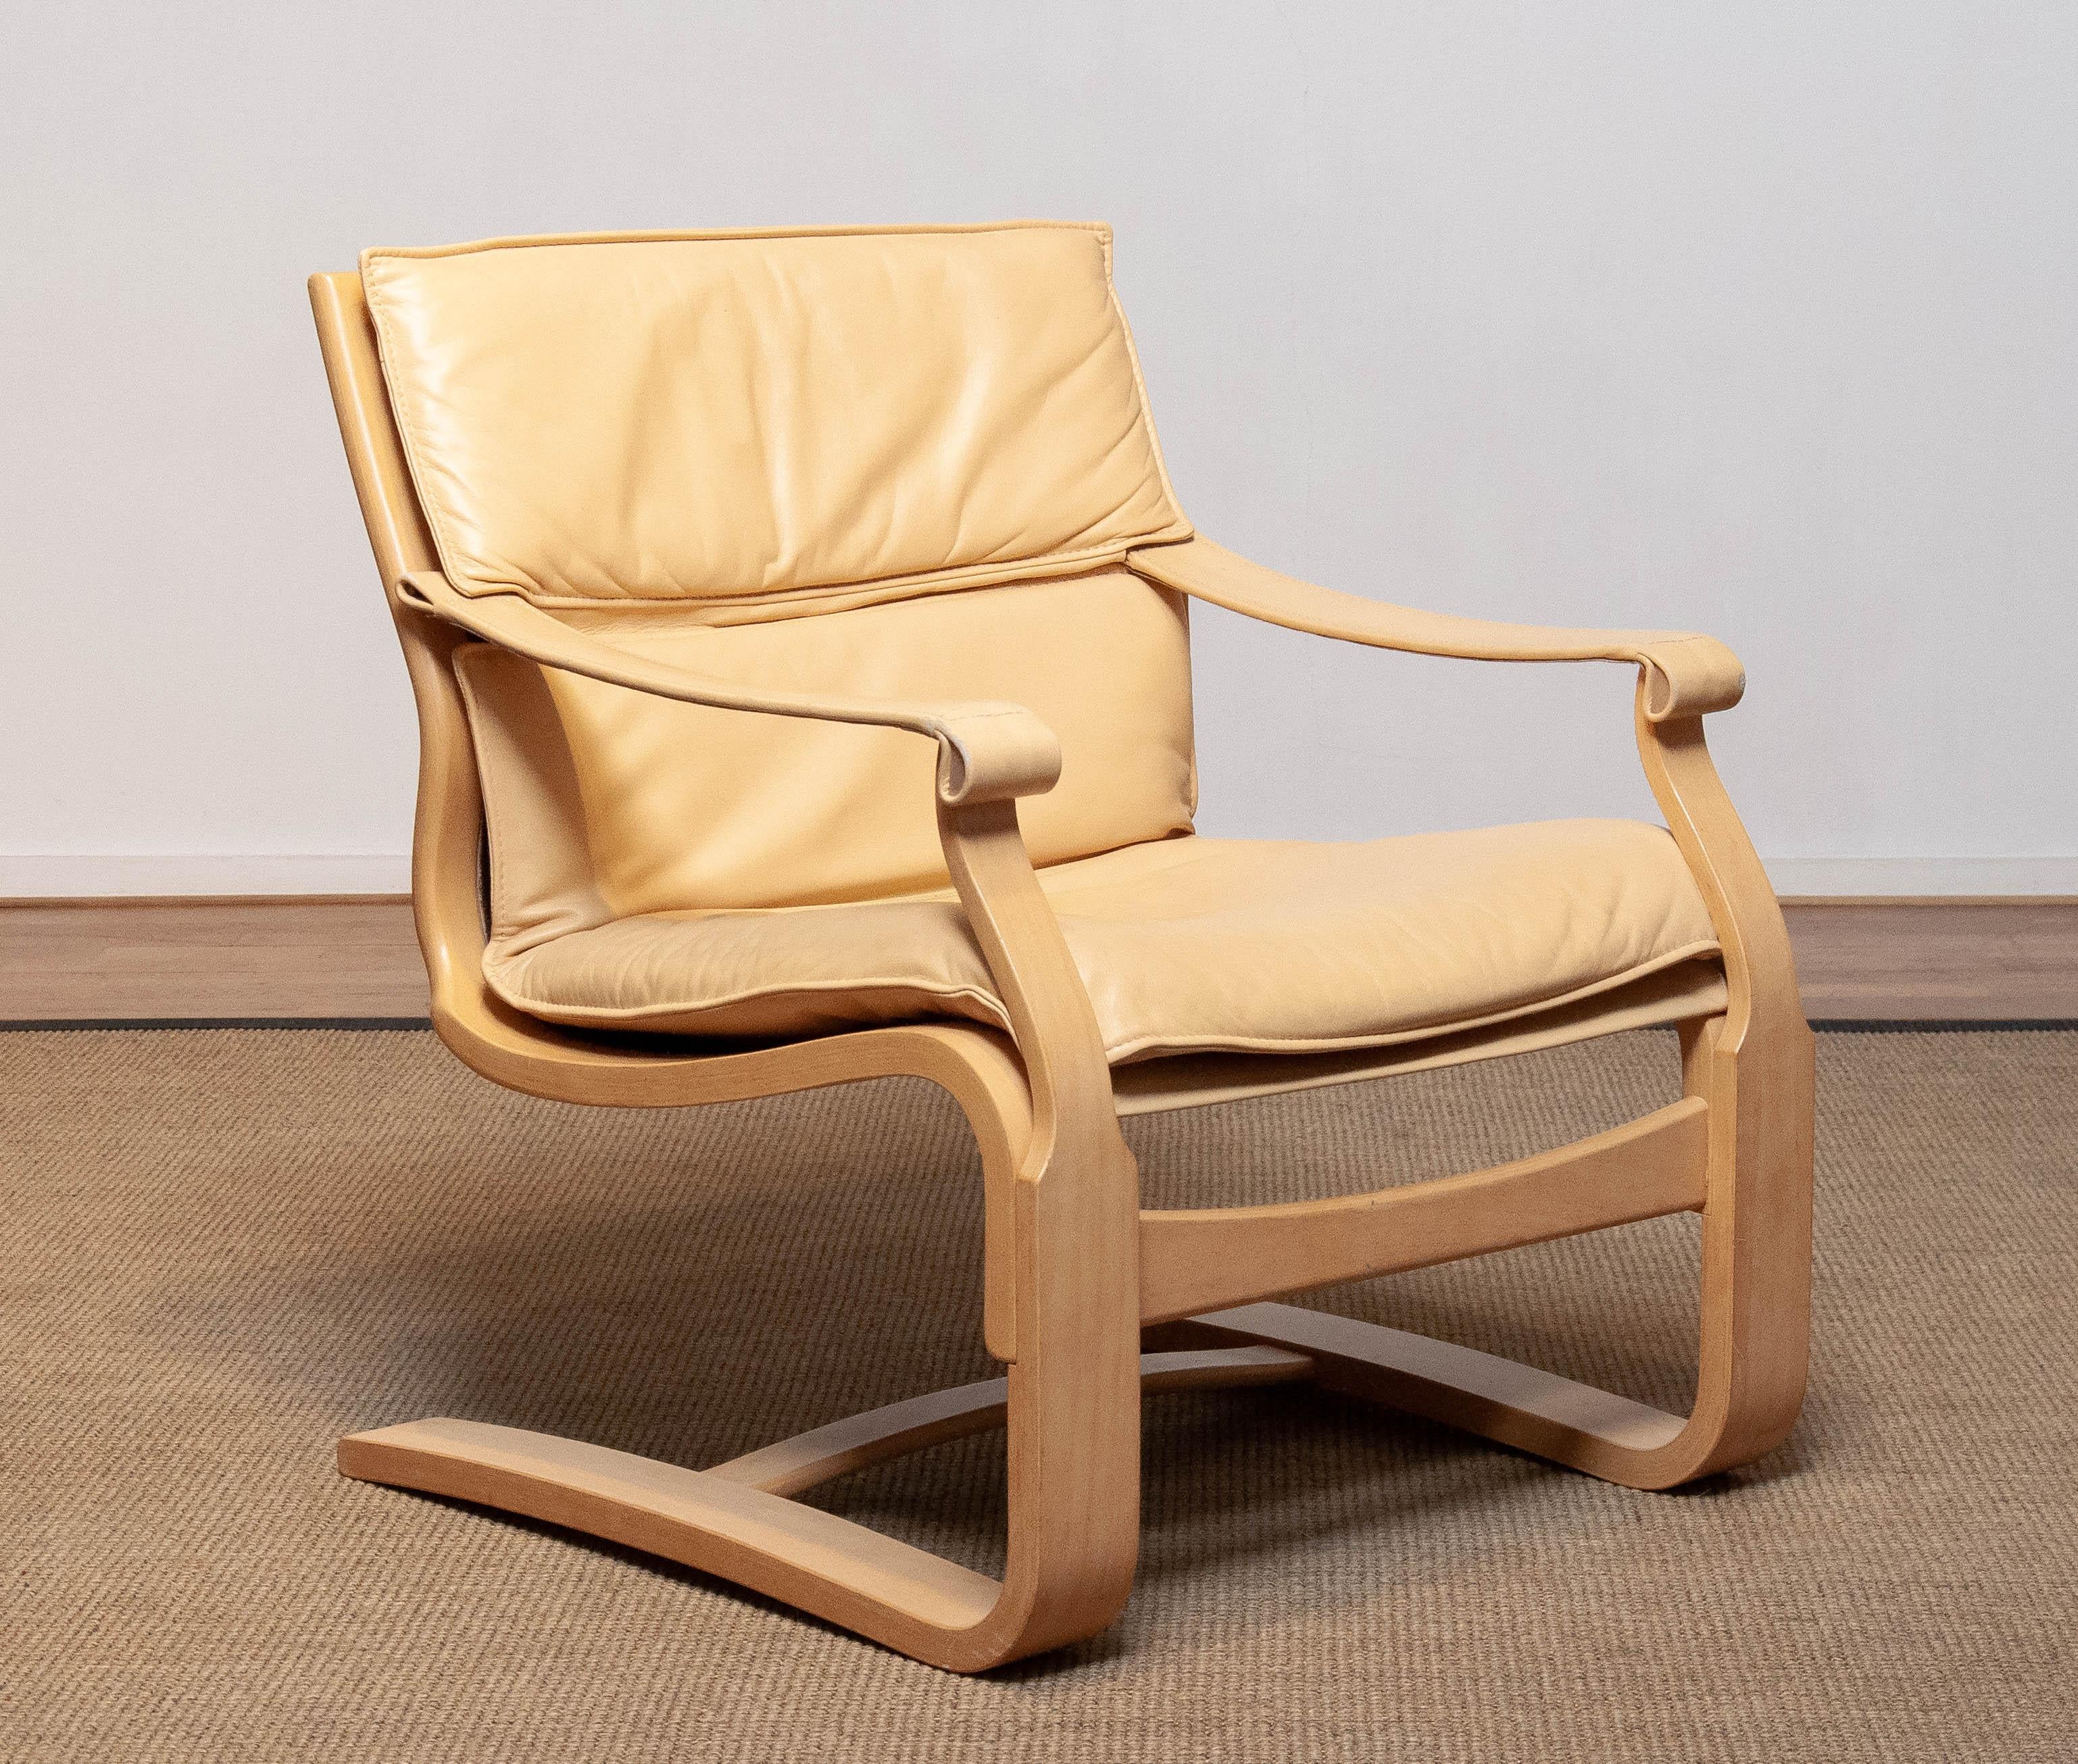 Chaise de salon en hêtre courbé, conçue par Ake Fribytter et fabriquée par Nelo dans les années 1970, recouverte de cuir beige/crème, en bon état et très confortable.
Veuillez noter que nous disposons de deux chaises dans notre galerie.

Attention